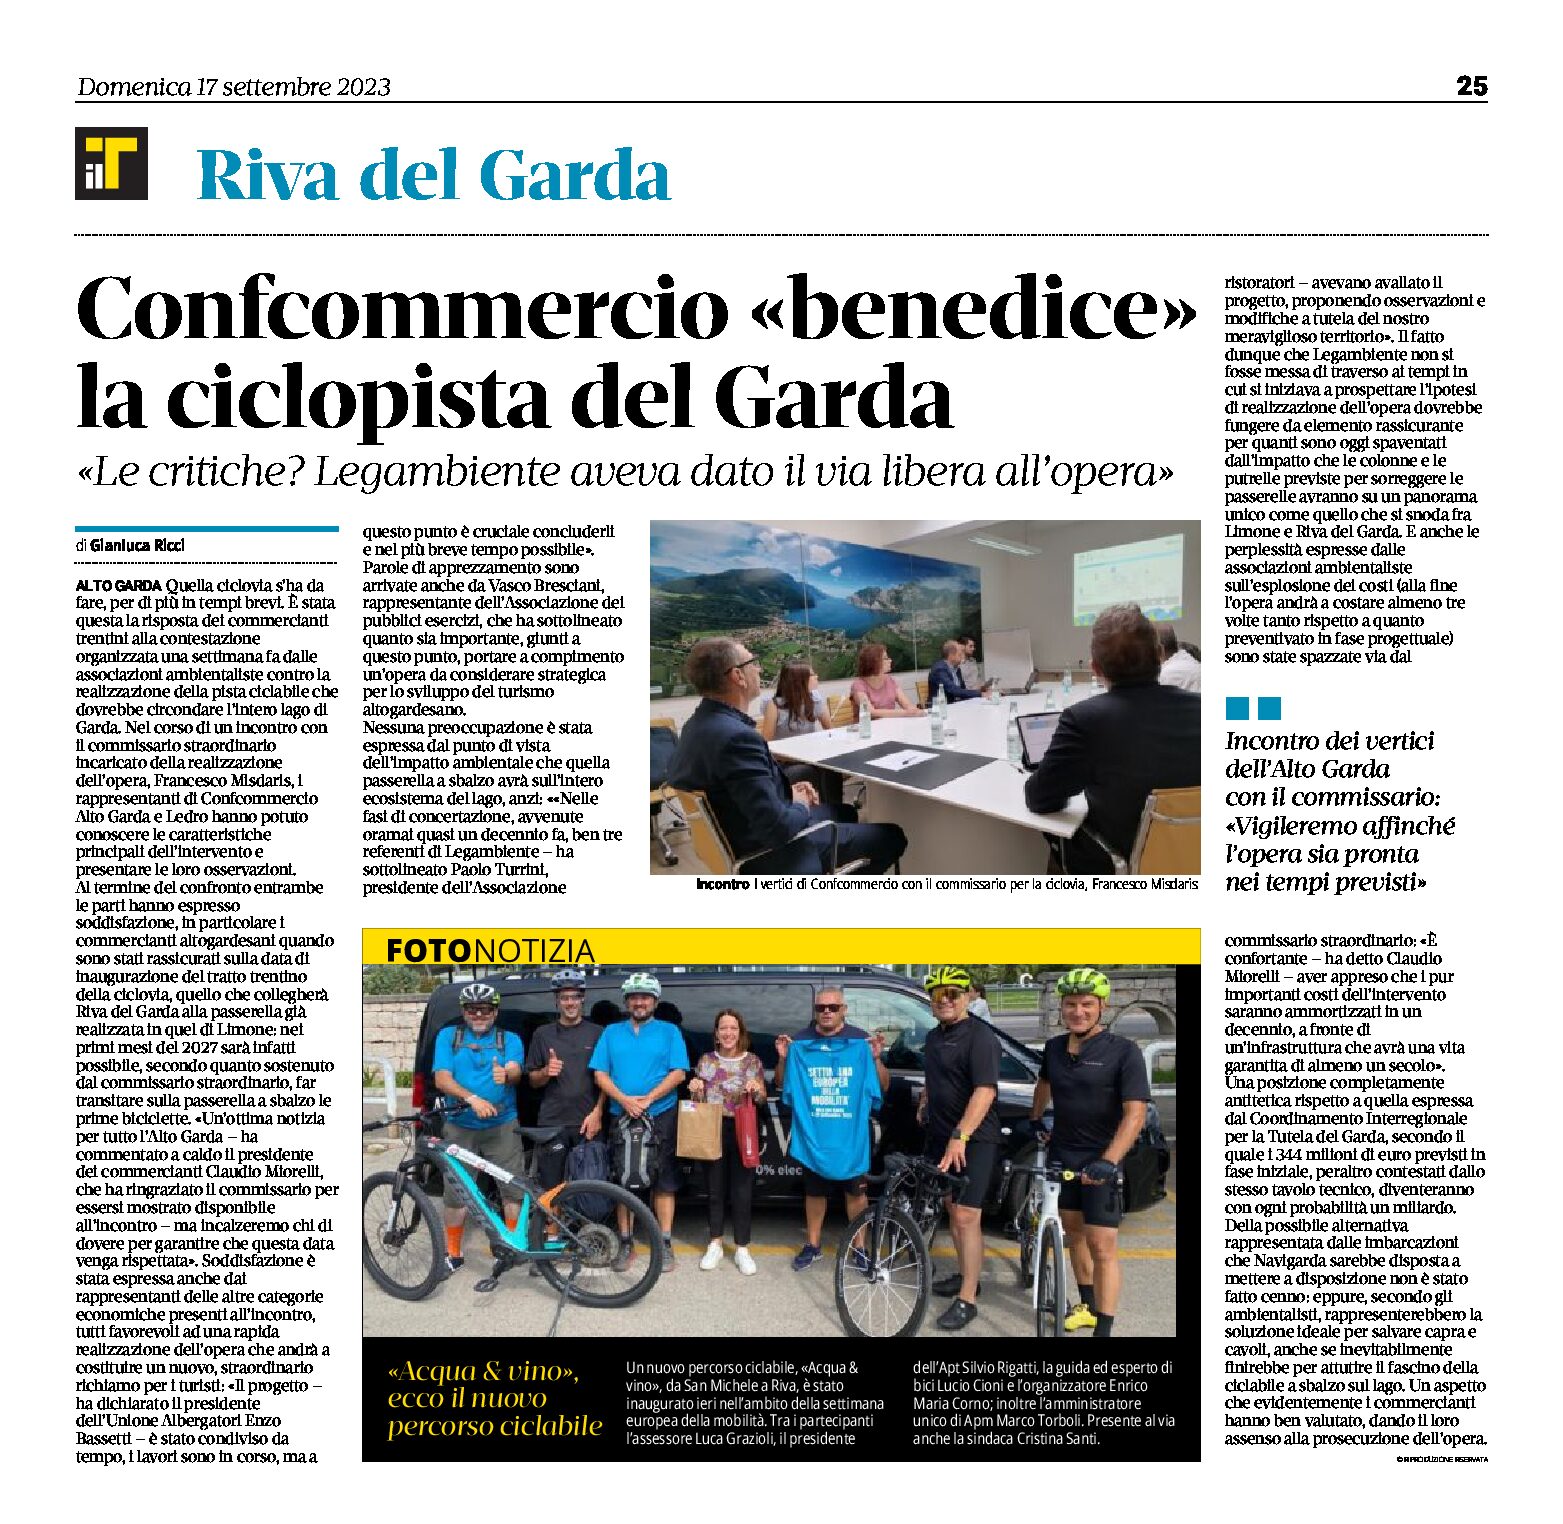 Riva: Confcommercio “benedice” la ciclovia del Garda